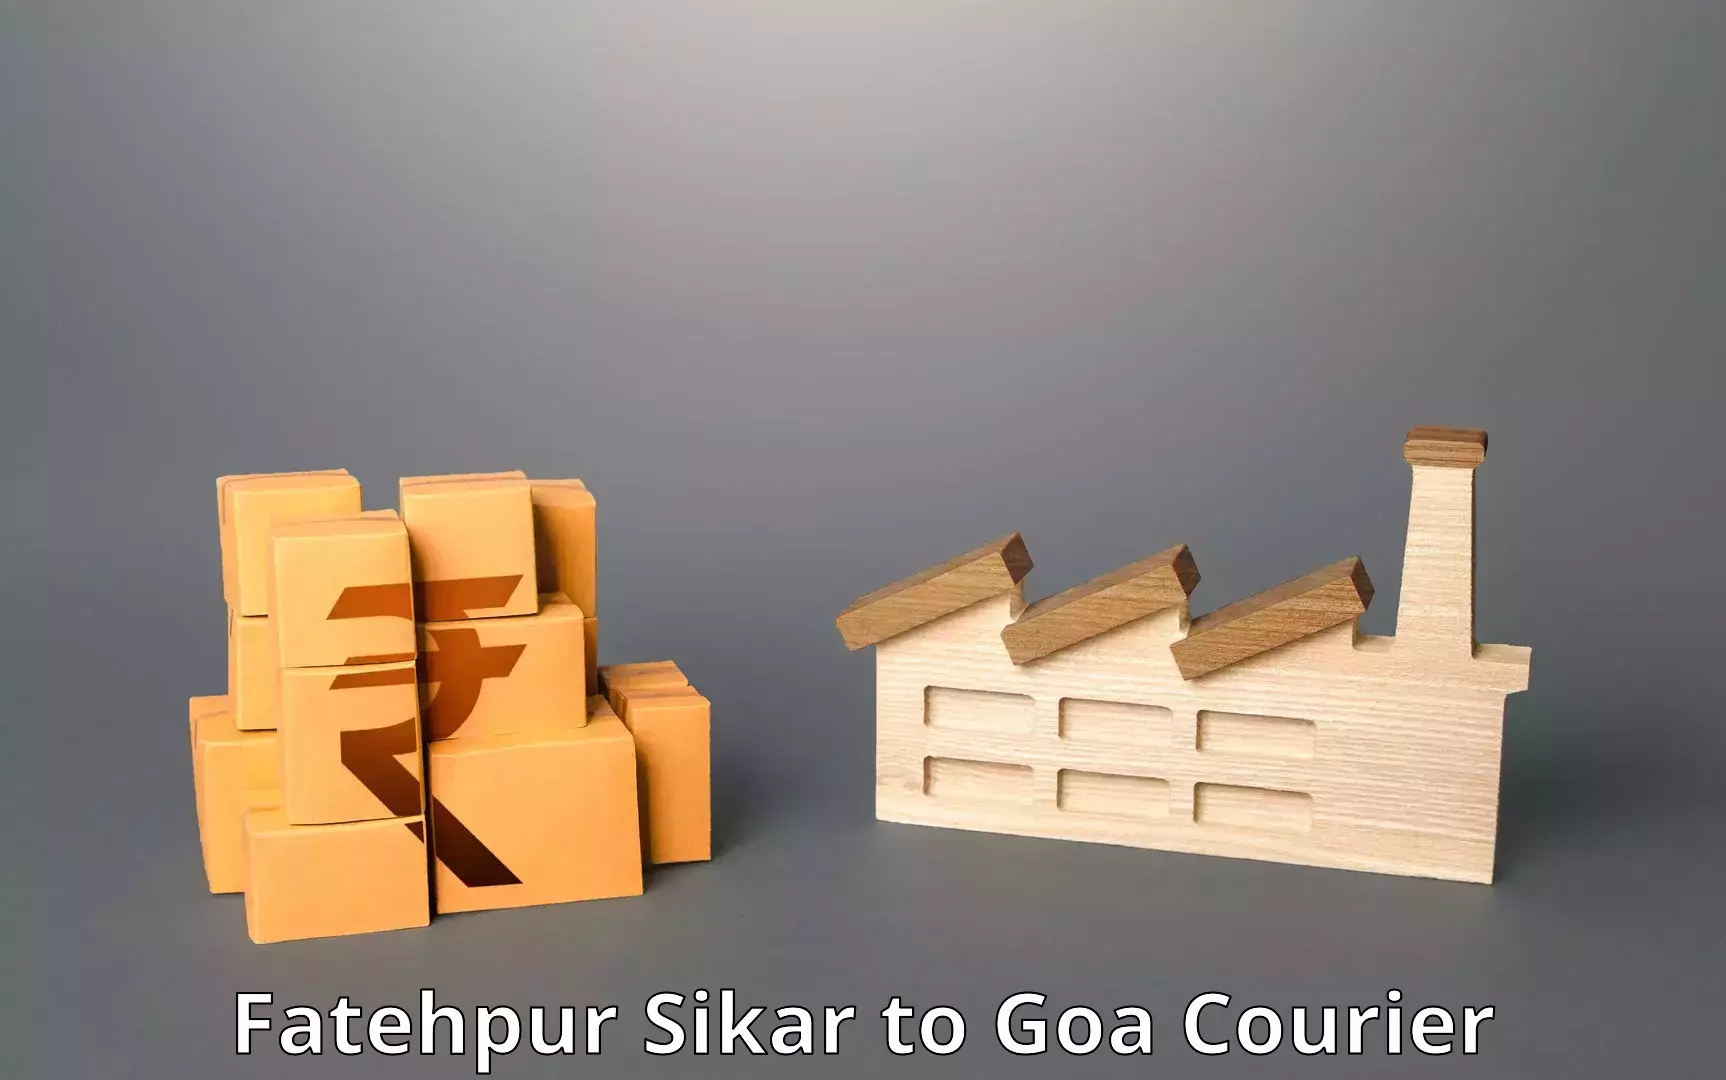 Bulk order courier Fatehpur Sikar to Vasco da Gama